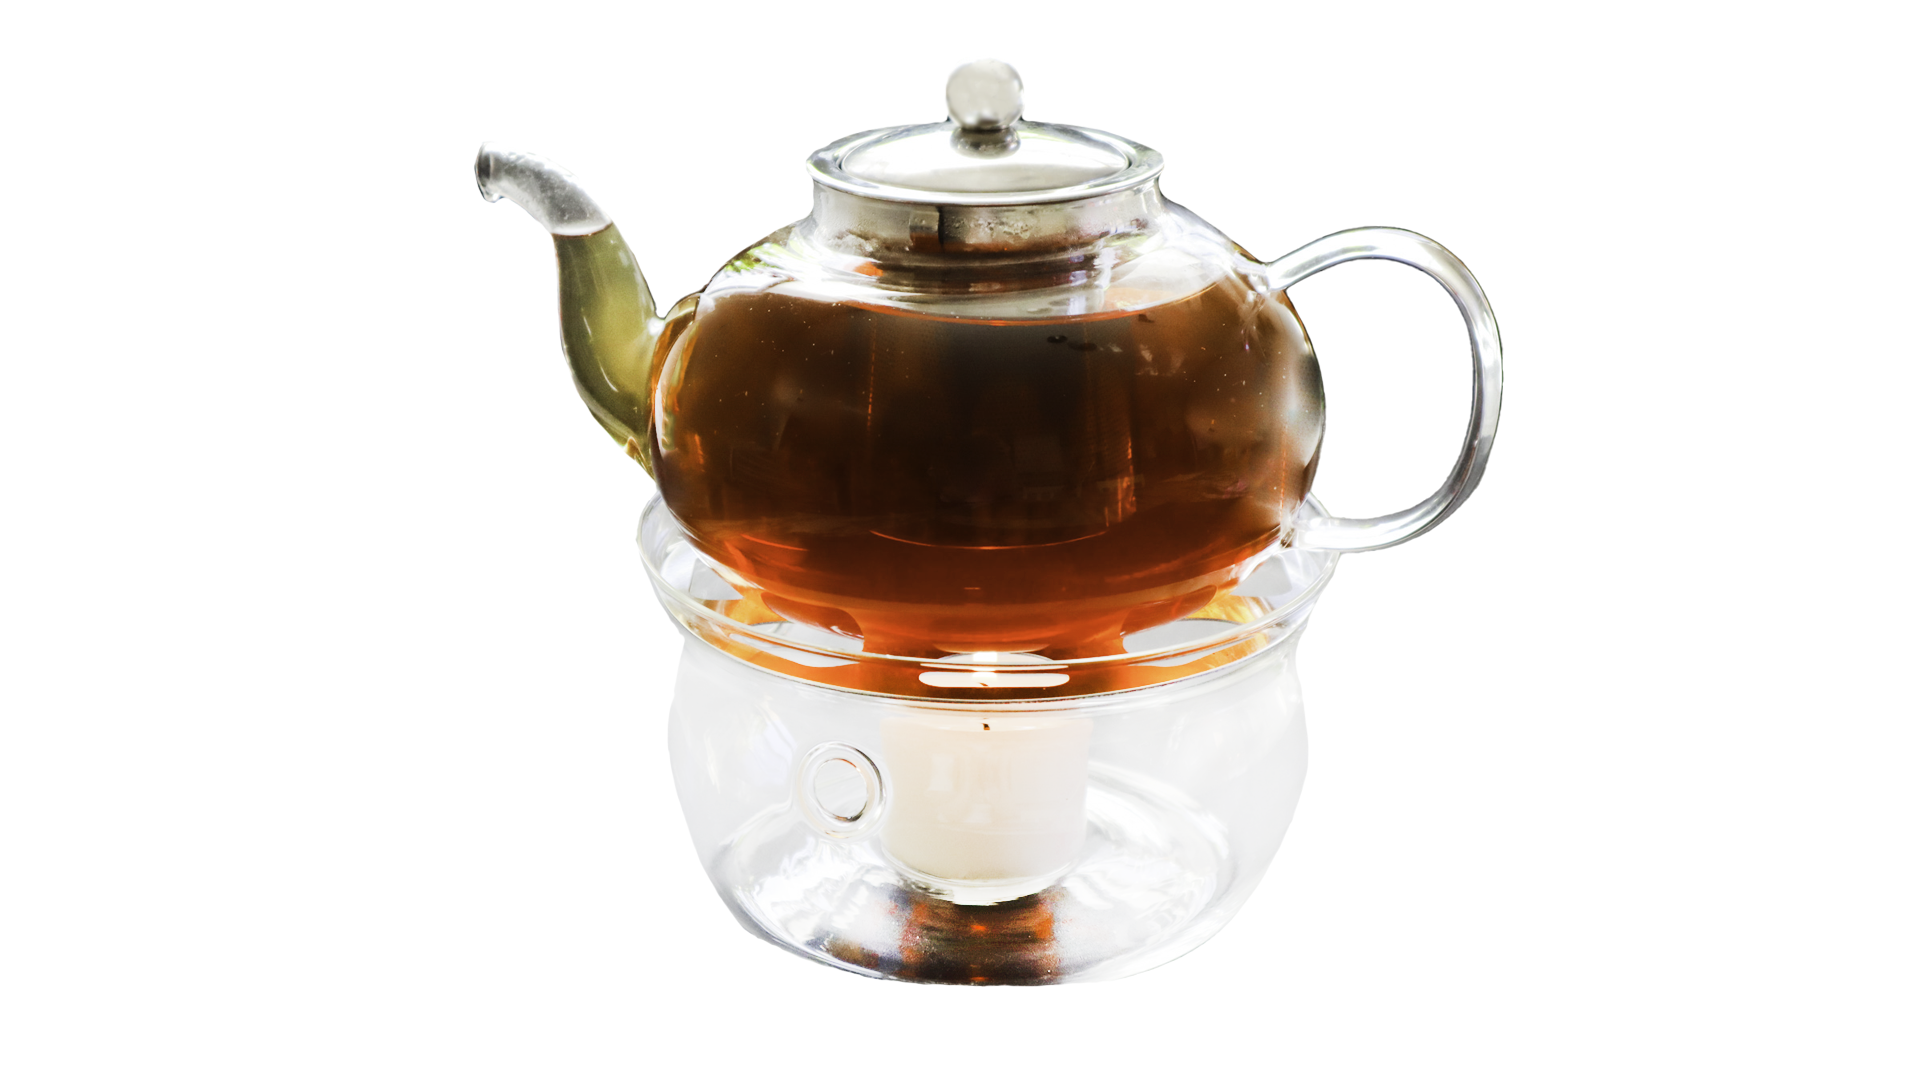 Universal Teapot Warmer stövchen Beautiful Aluminum Alloy